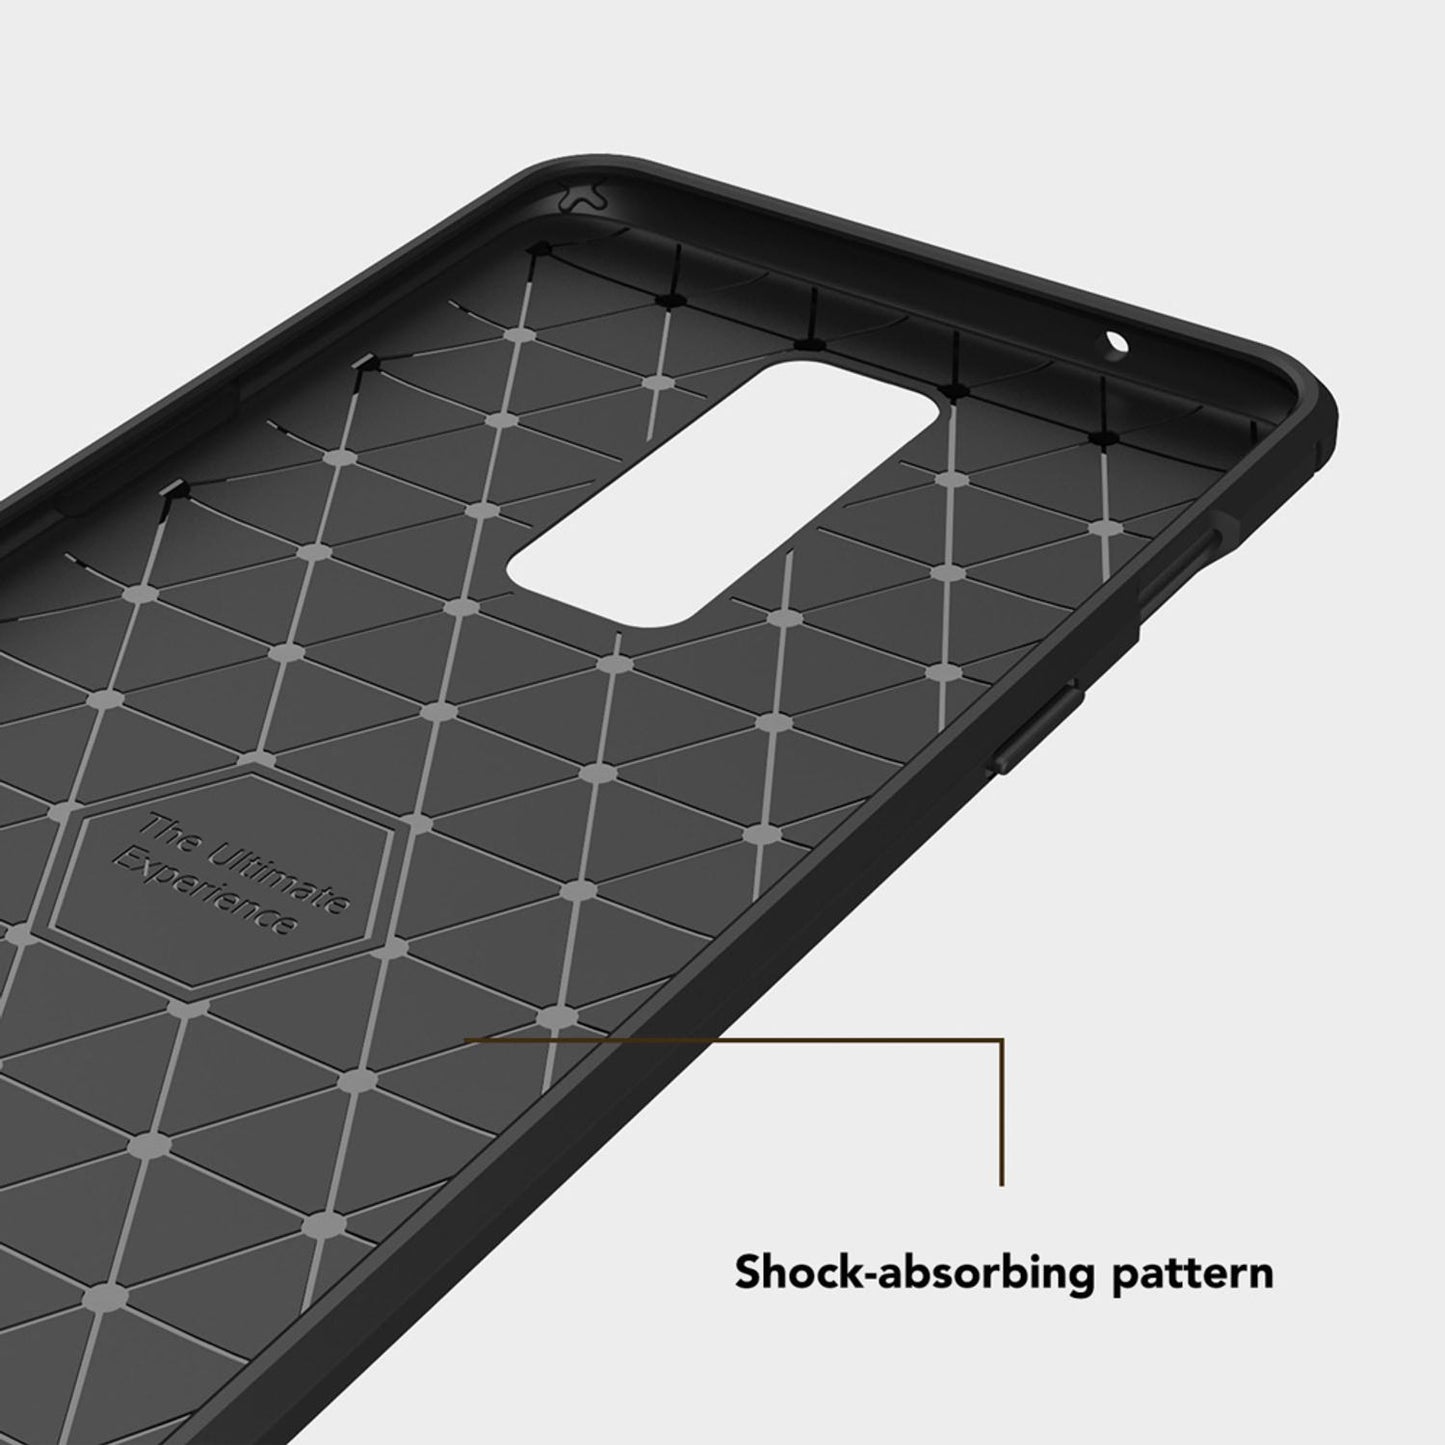 NALIA Schutzhülle für OnePlus 6,  Slim TPU Silikon Case Cover Dünne Handy Tasche